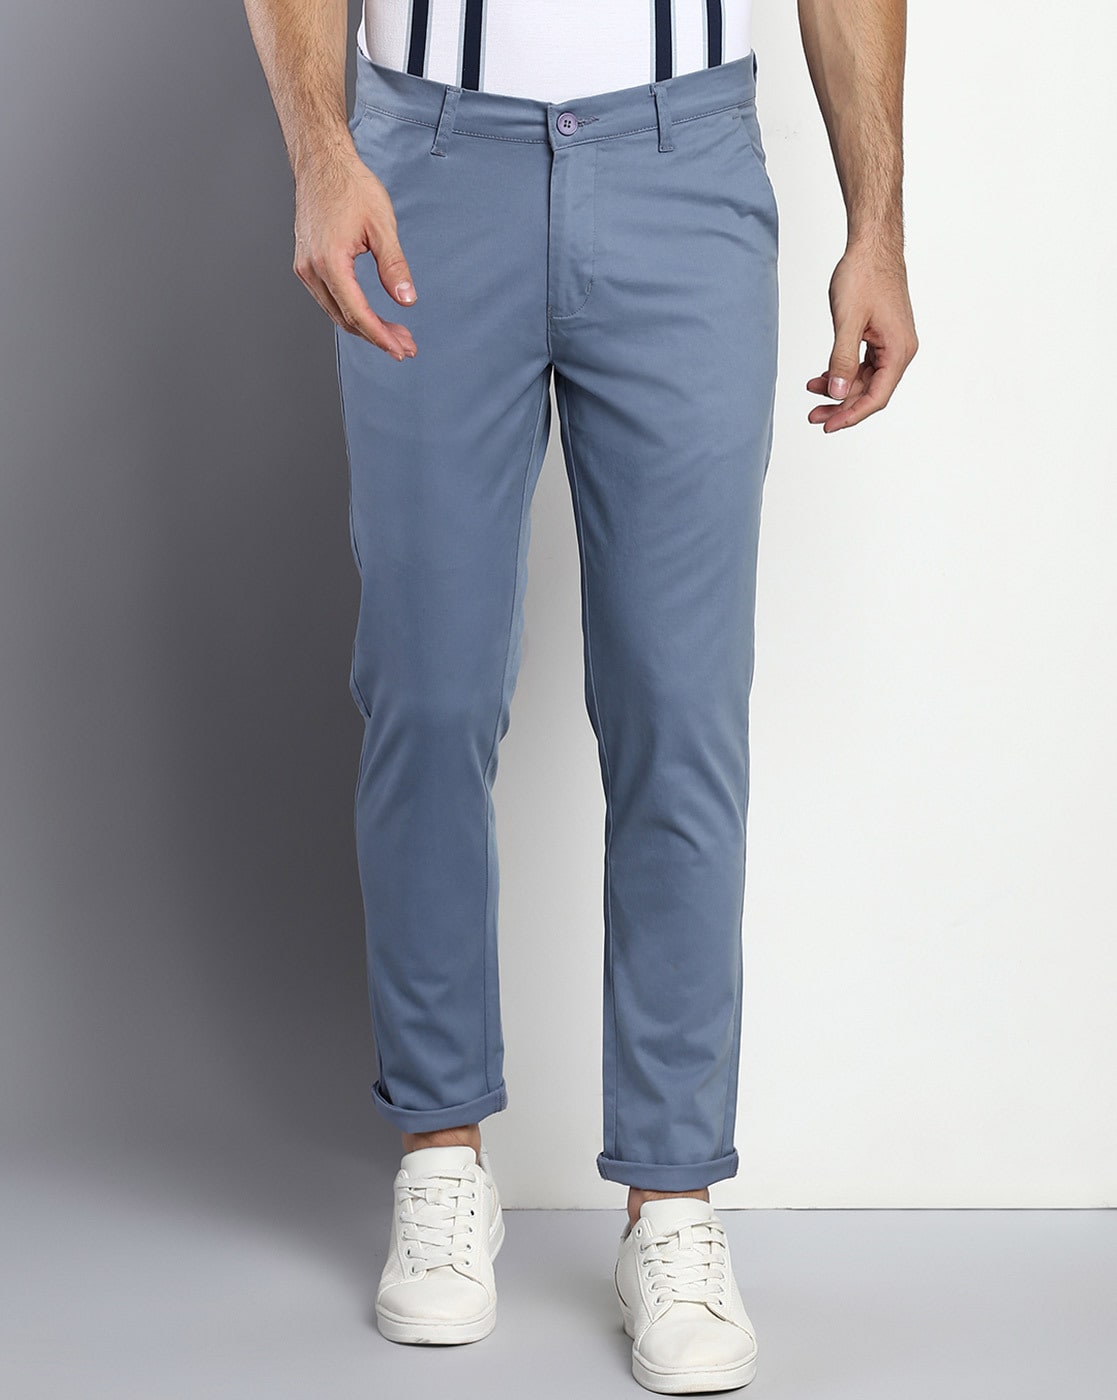 Men's Slim Fit 1 Button Shawl Lapel Tuxedo Jacket & Pants - Indigo Blue |  The Suit Depot